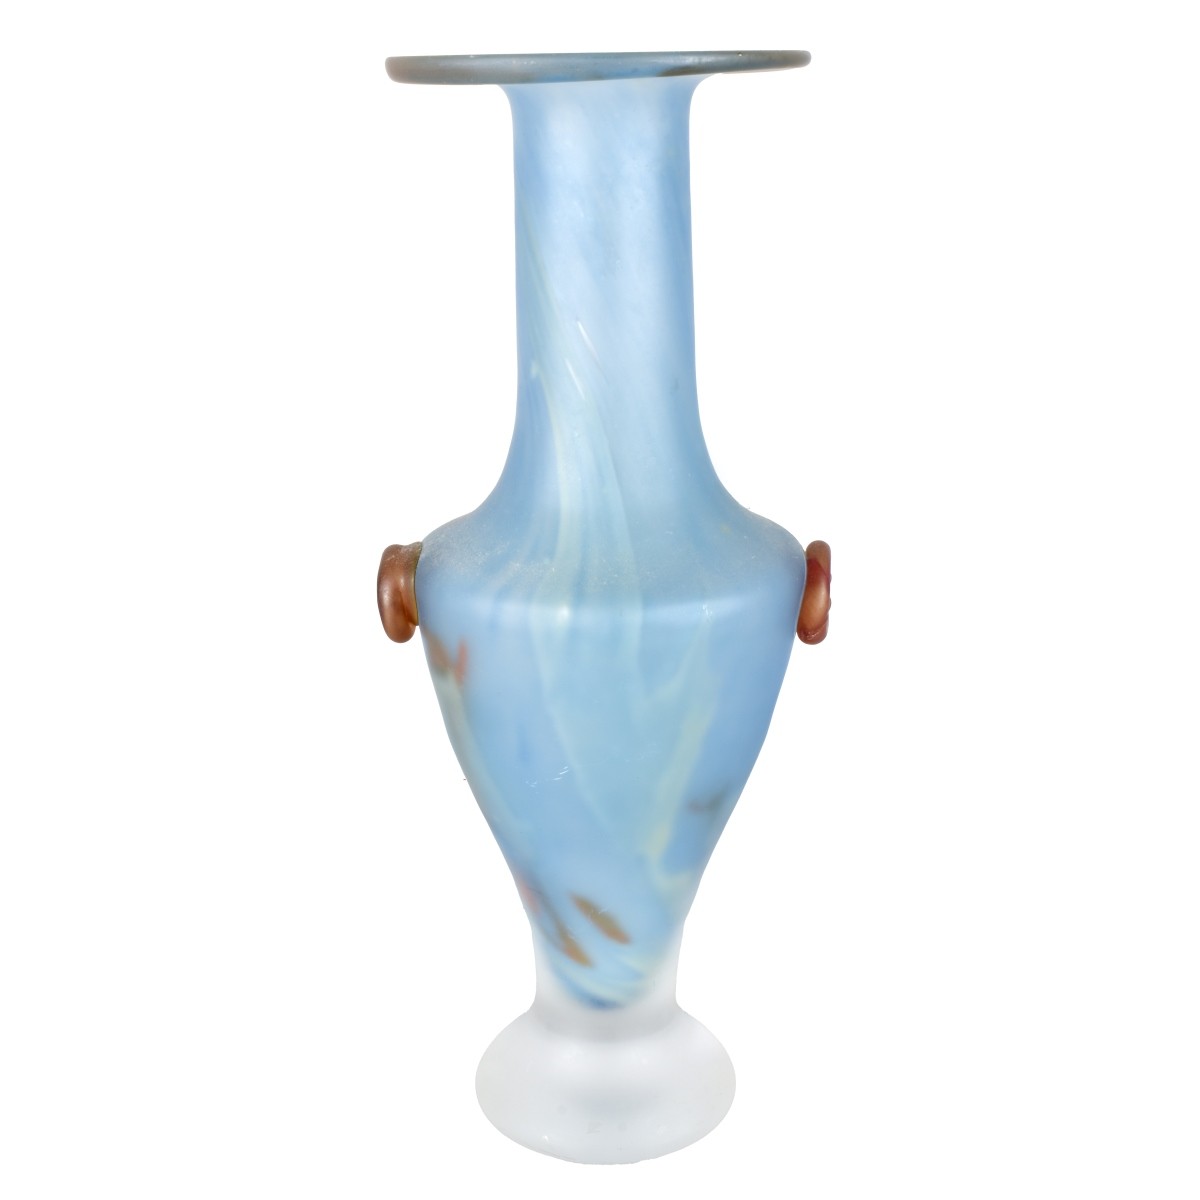 Kosta Boda "Pandora" Vase